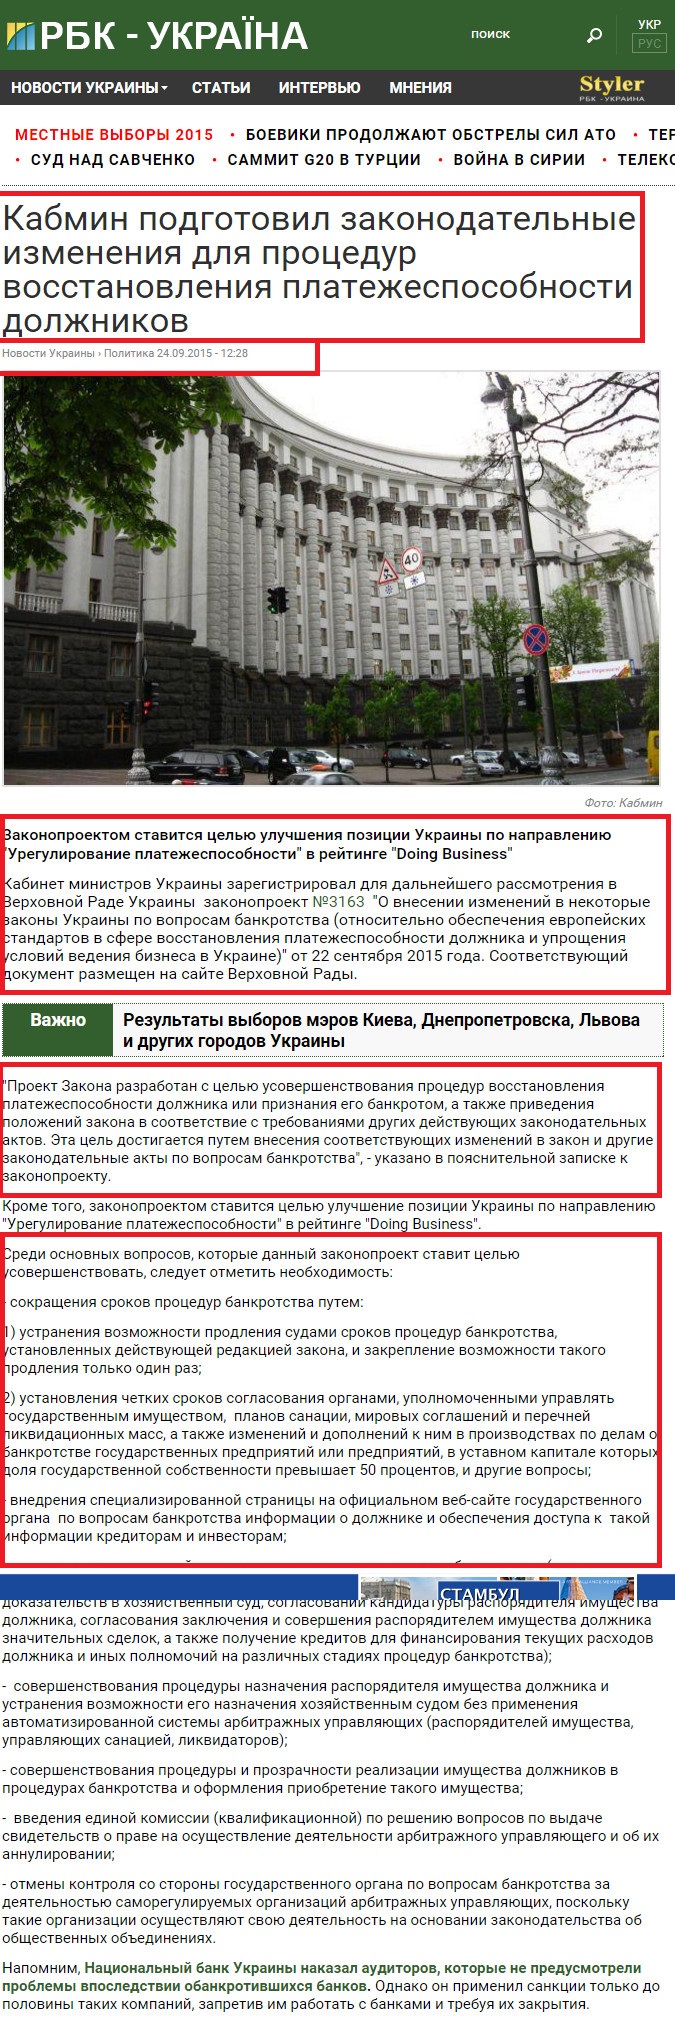 http://www.rbc.ua/ukr/news/kabmin-podgotovil-zakonodatelnye-izmeneniya-1443087712.html